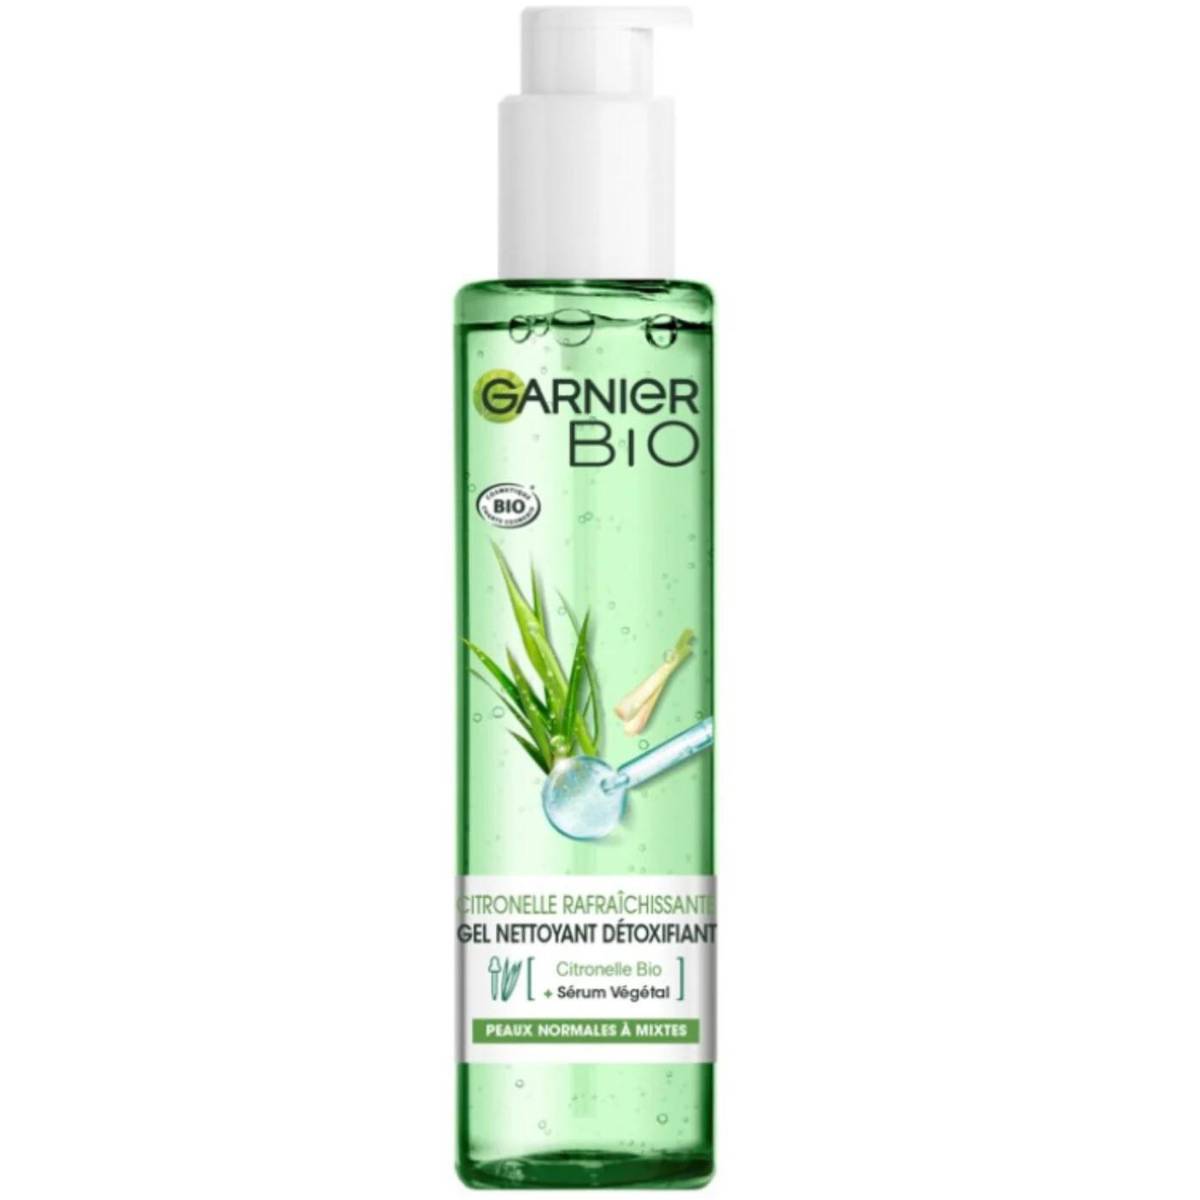 Garnier Bio Face Detoxifying Cleanser - MaxxiDiscount Lemongrass 150ml